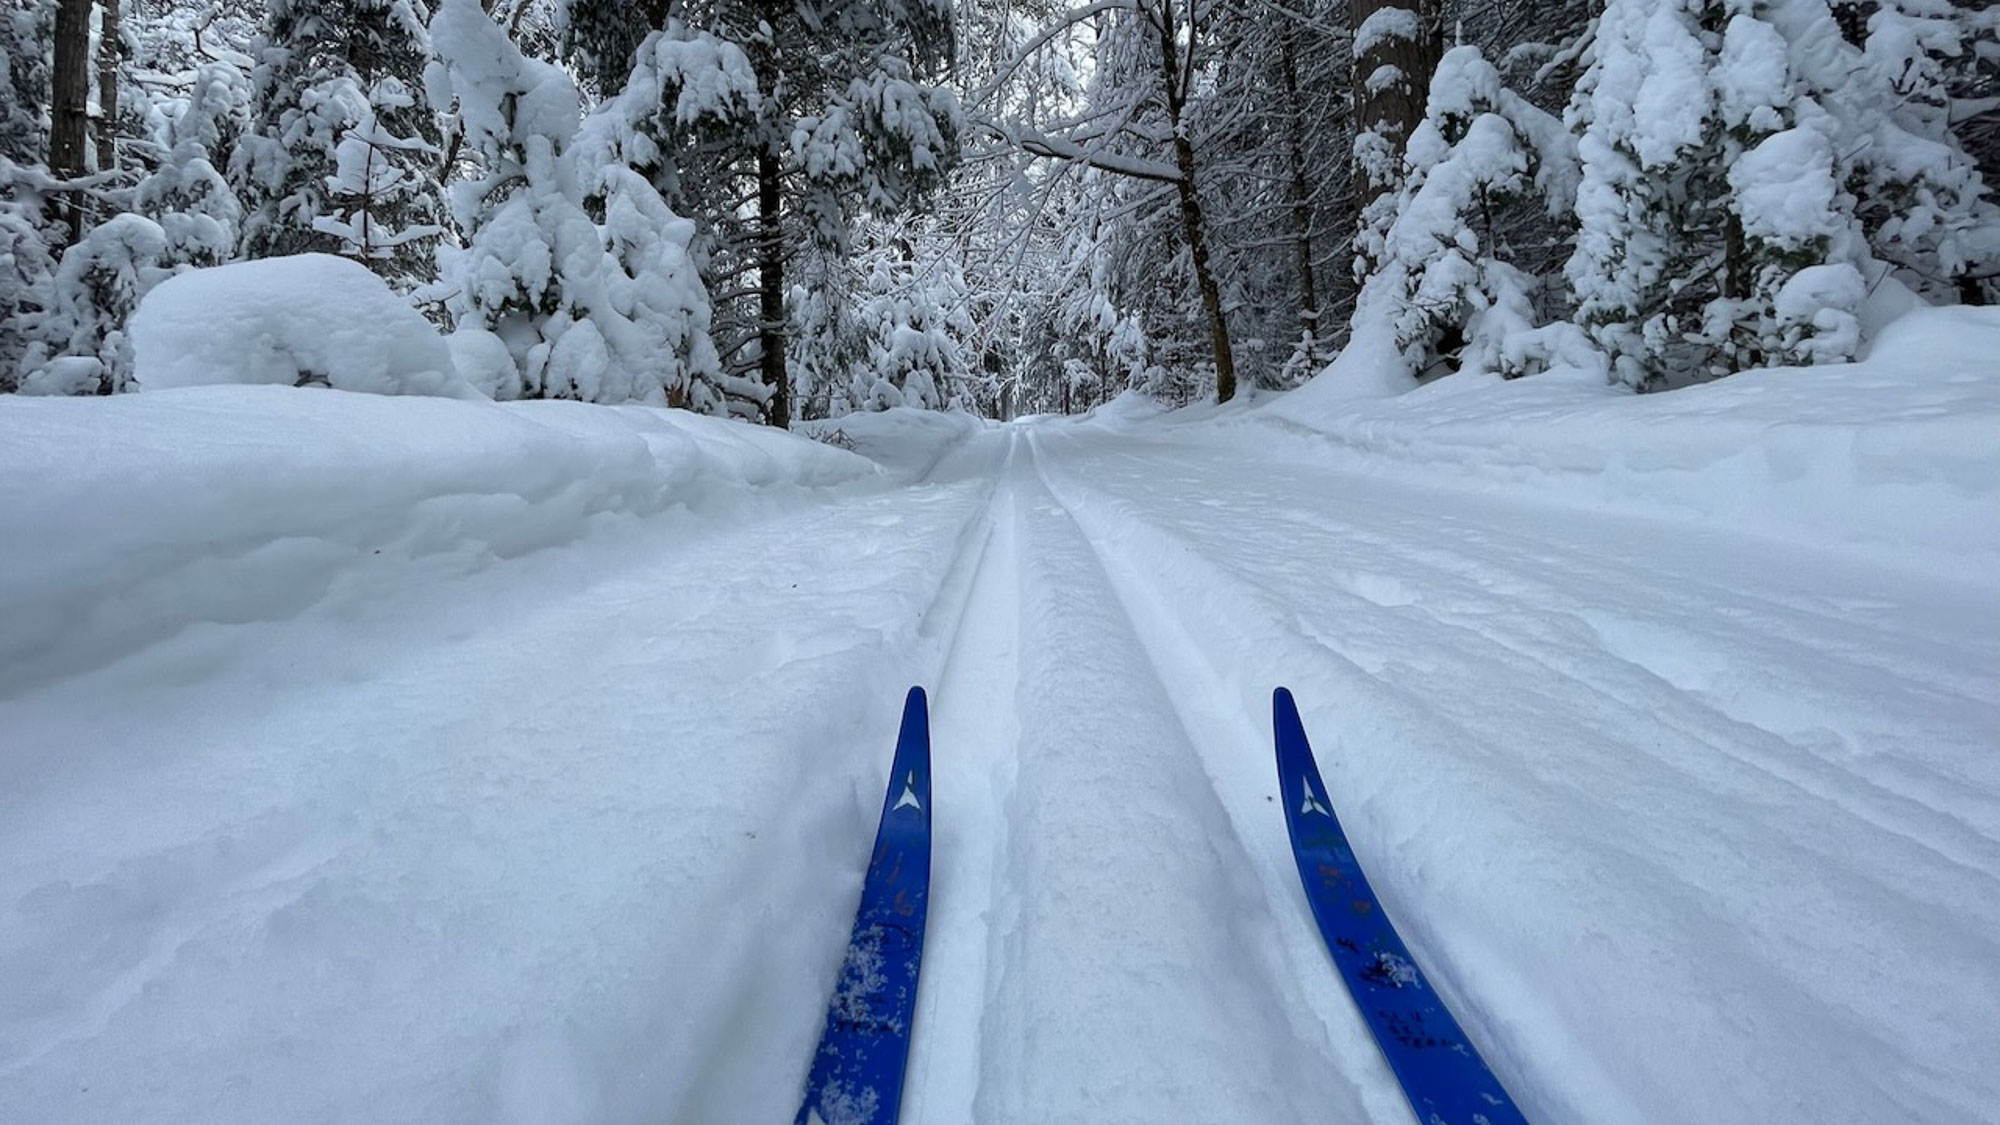 skis on snow